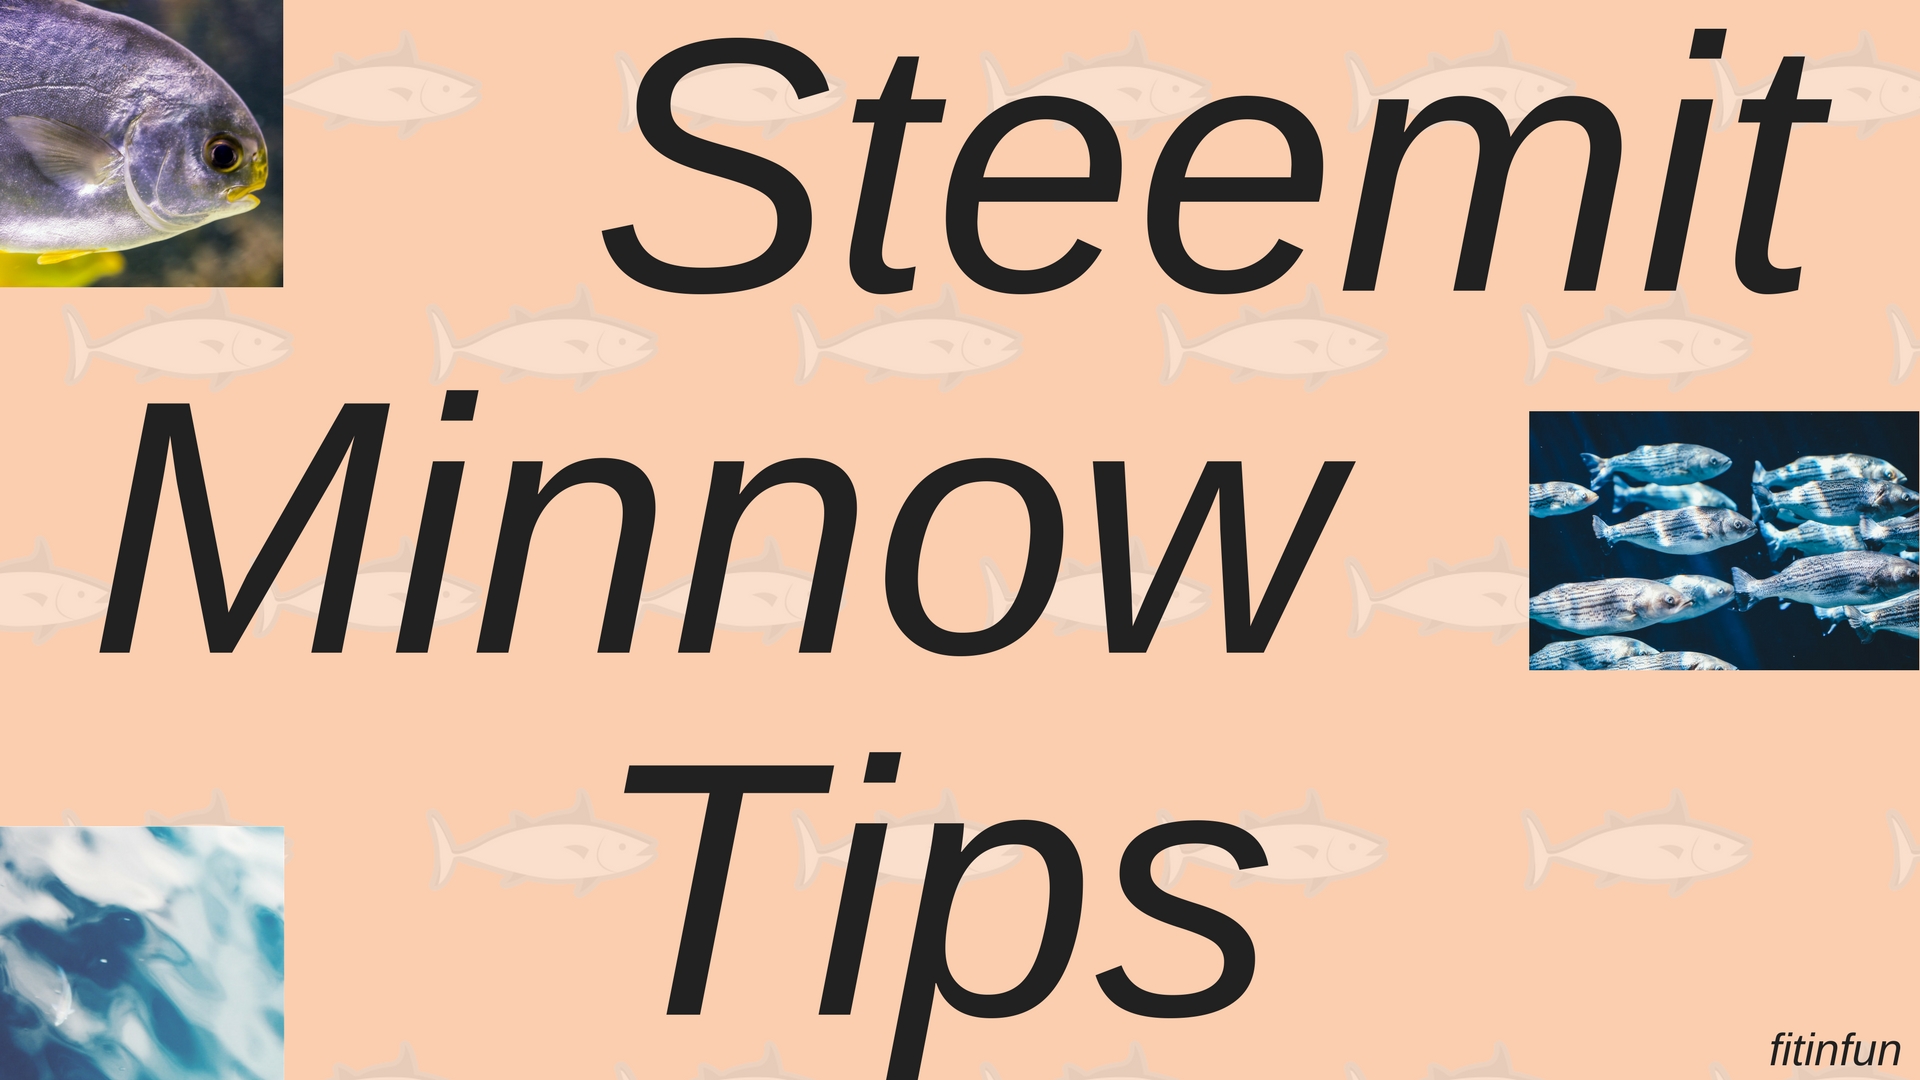 Steemit Minnow tips fitinfun.jpg